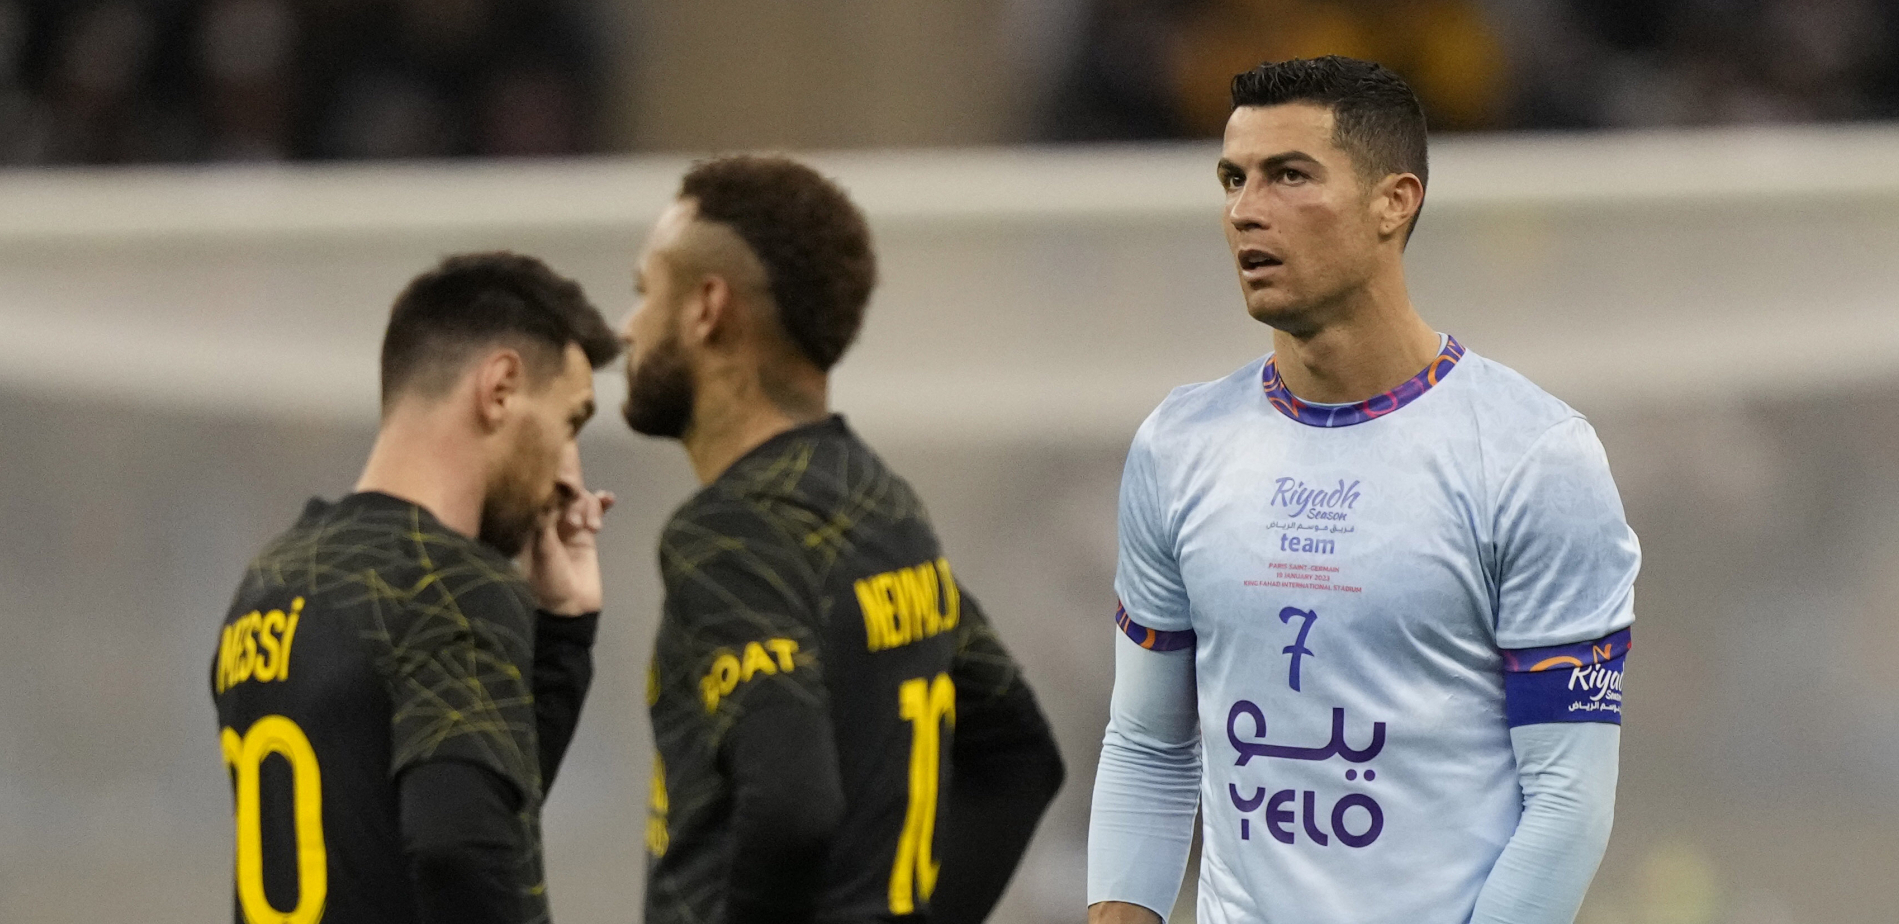 HITNO POZVAO ADVOKATE Ronaldo rešio da "odere" bivši klub, tuži ih za 20 miliona